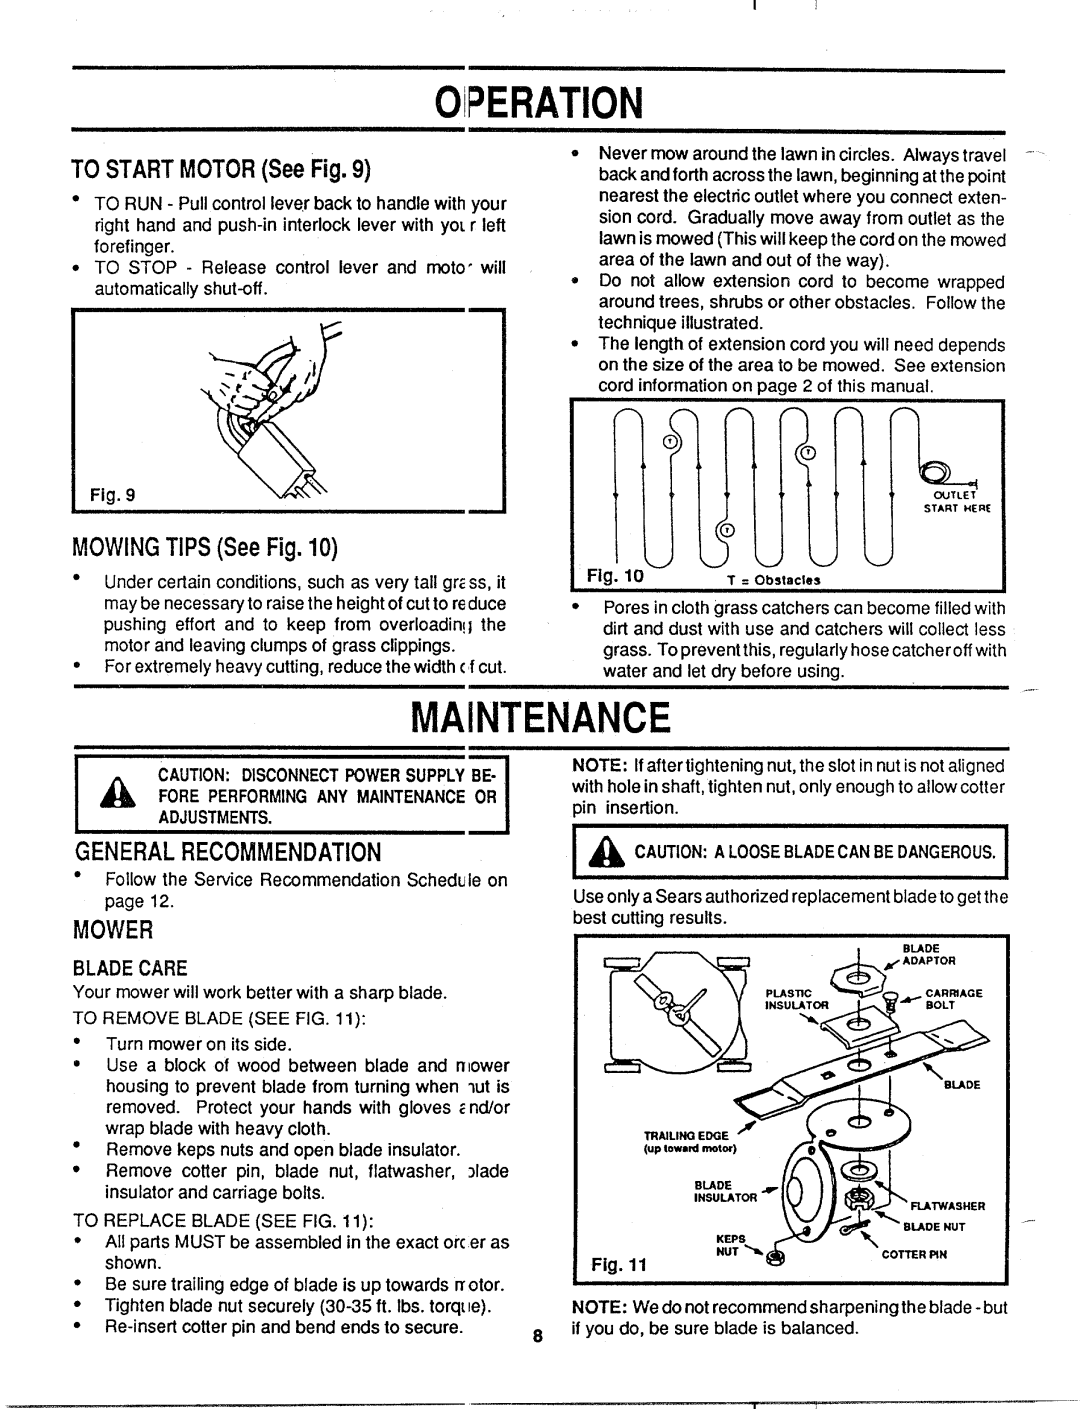 MTD 181-124K002 manual 